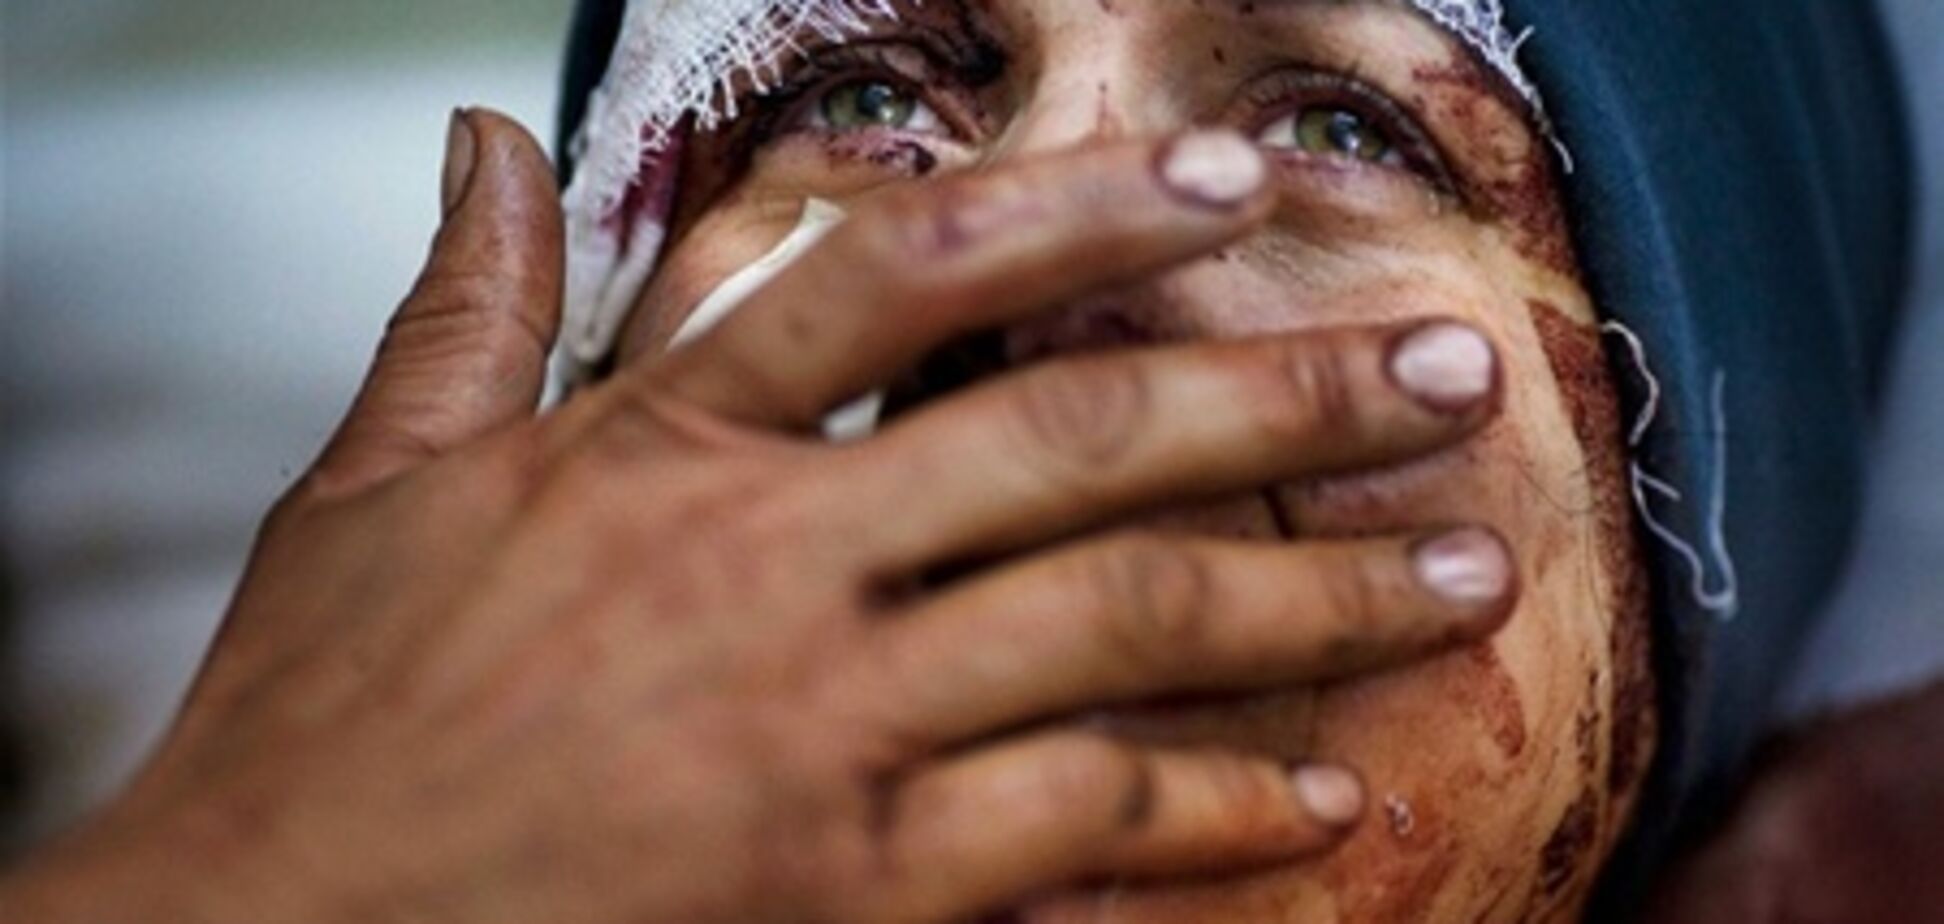 ООН назвала ситуацию в Сирии гуманитарной катастрофой